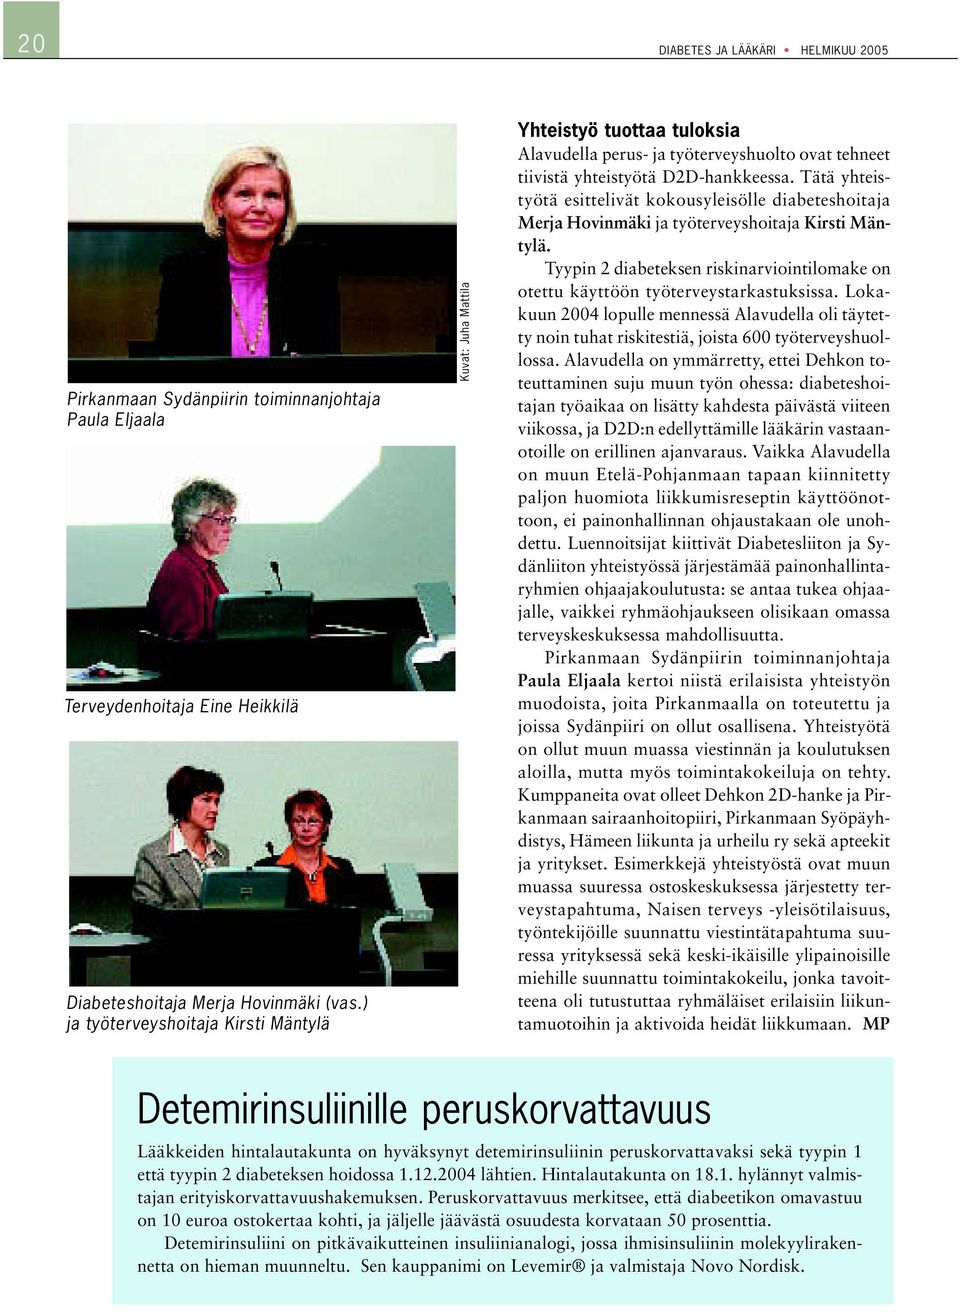 Tätä yhteistyötä esittelivät kokousyleisölle diabeteshoitaja Merja Hovinmäki ja työterveyshoitaja Kirsti Mäntylä.